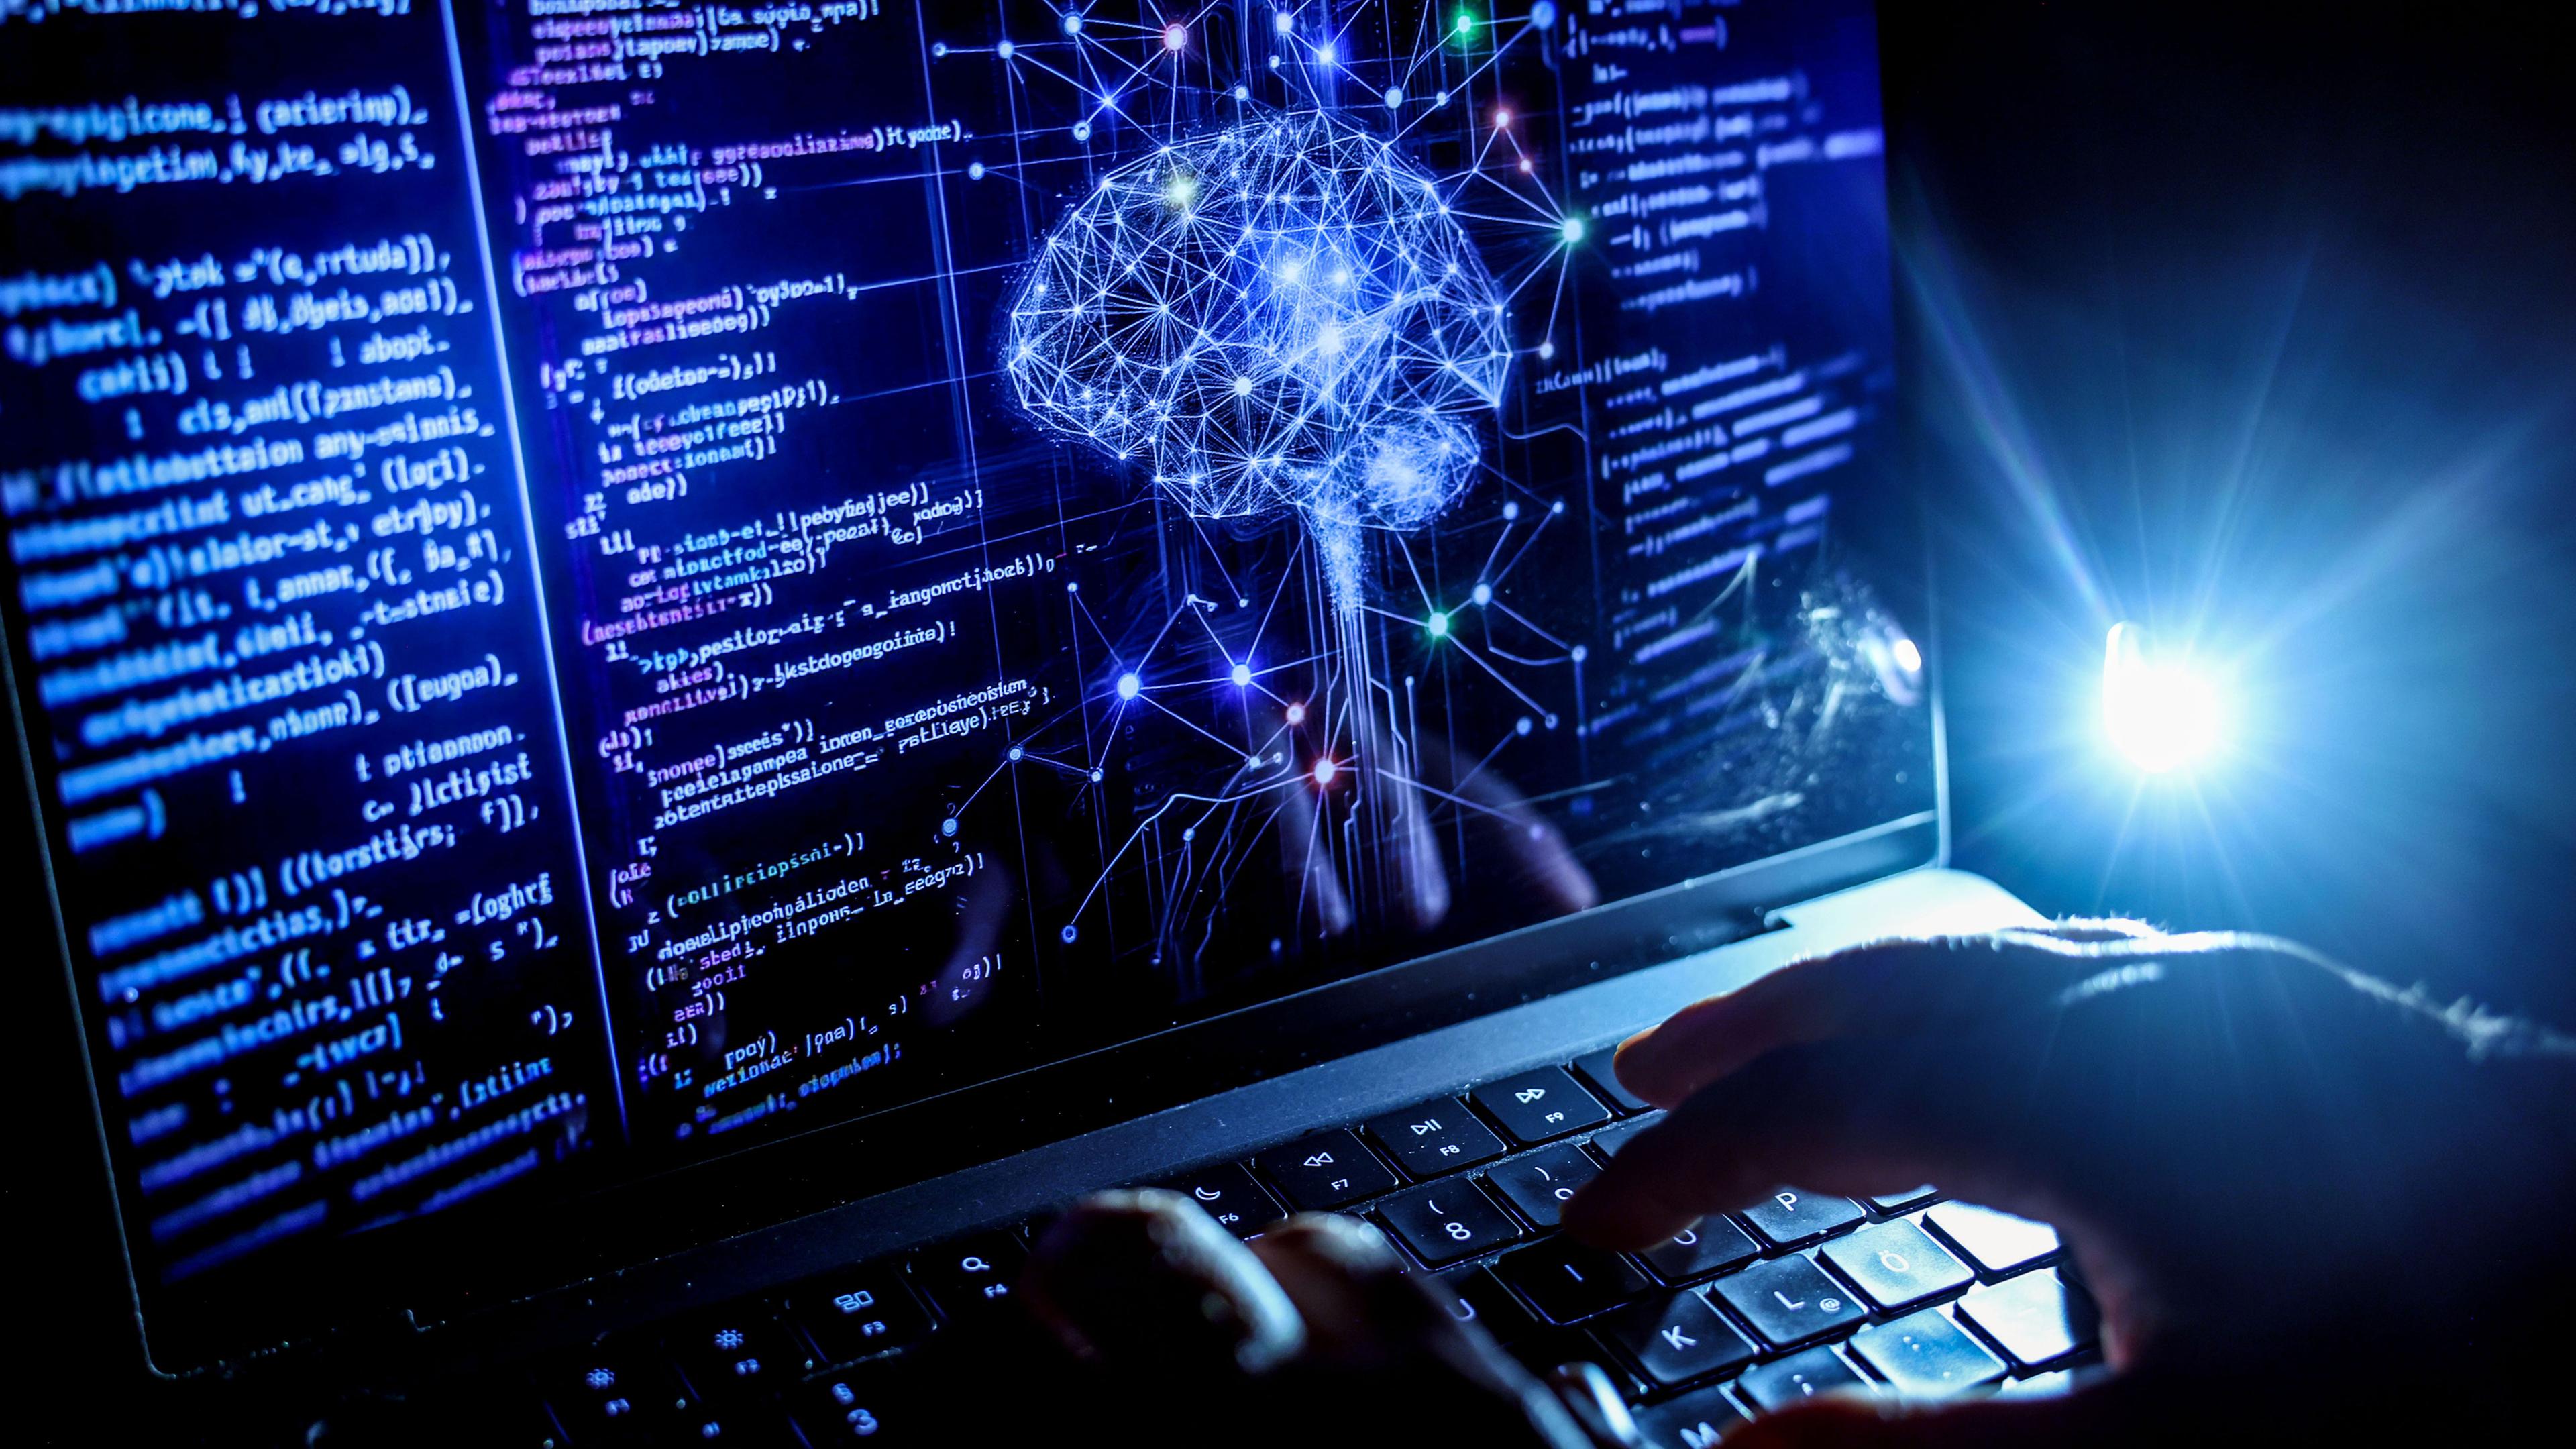 Eine Person arbeitet am Rechner, auf dessen Bildschirm ein durch Künstliche Intelligenz generiertes Illustrationsbild mit Code verschiedener Programmiersprachen und einem neuronalen Netzwerk-Diagramm zu sehen ist. (ILLUSTRATION)